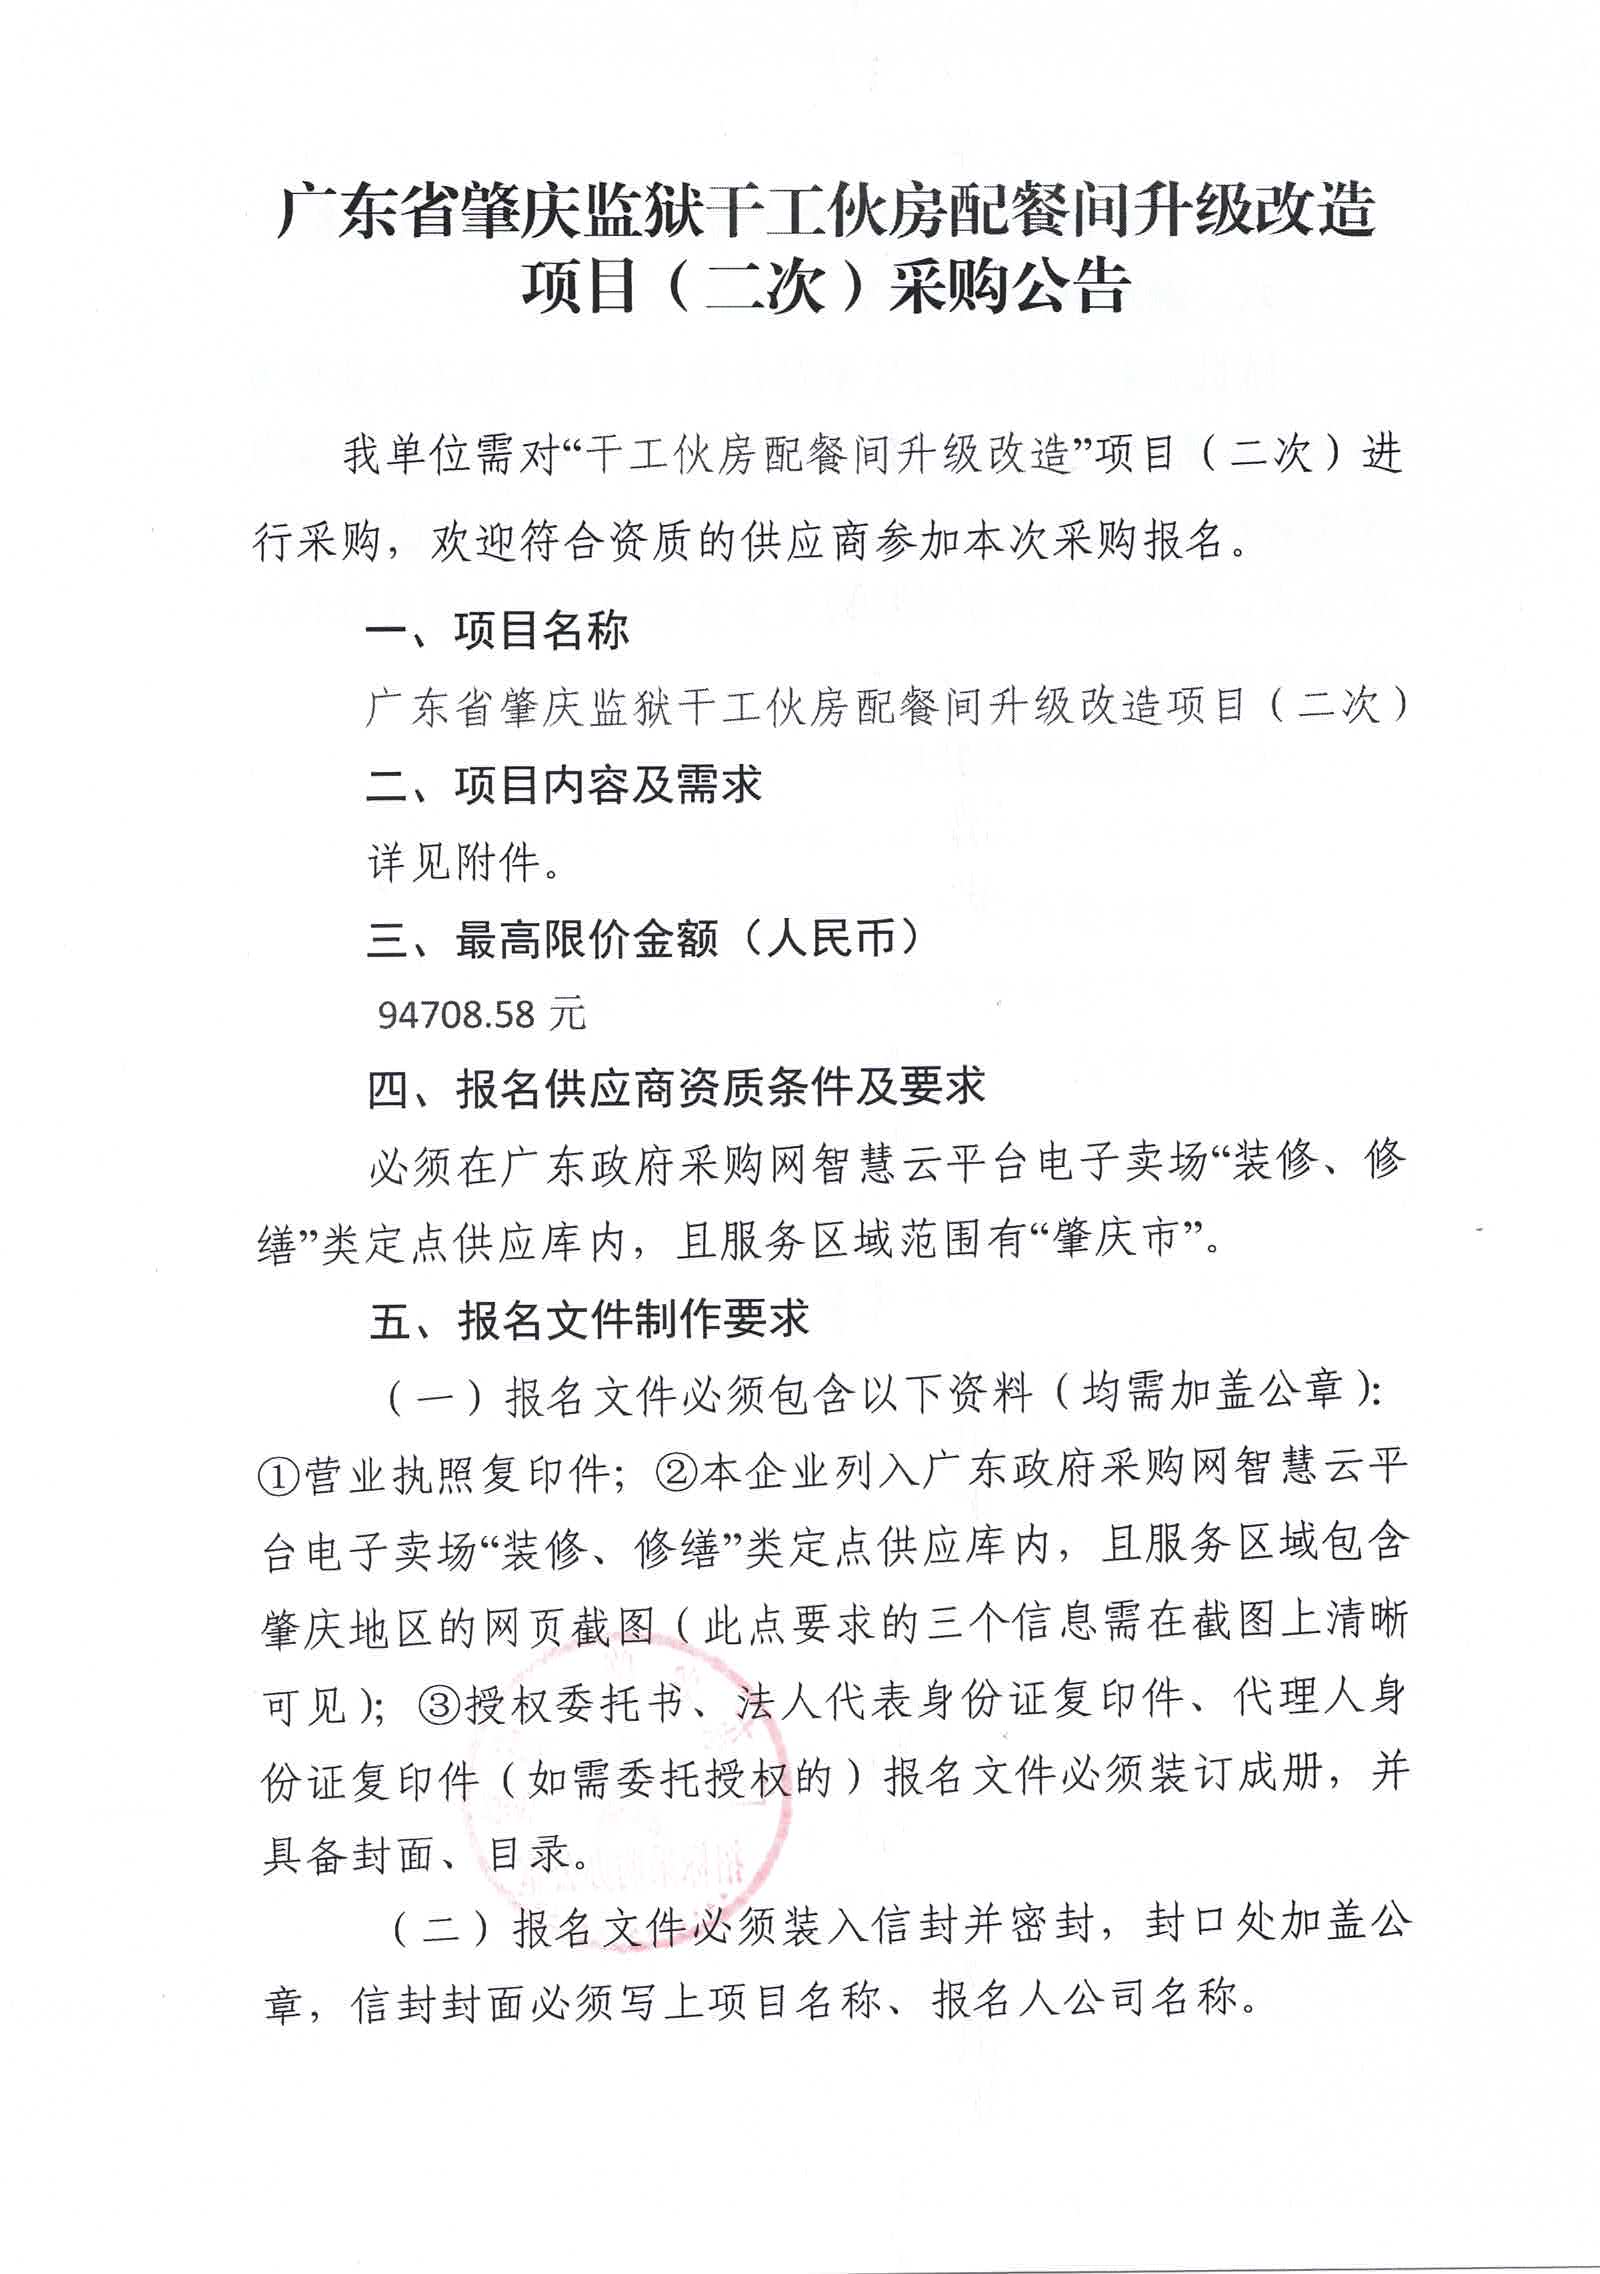 广东省肇庆监狱干工伙房配餐间升级改造项目（二次）采购公告1.jpg